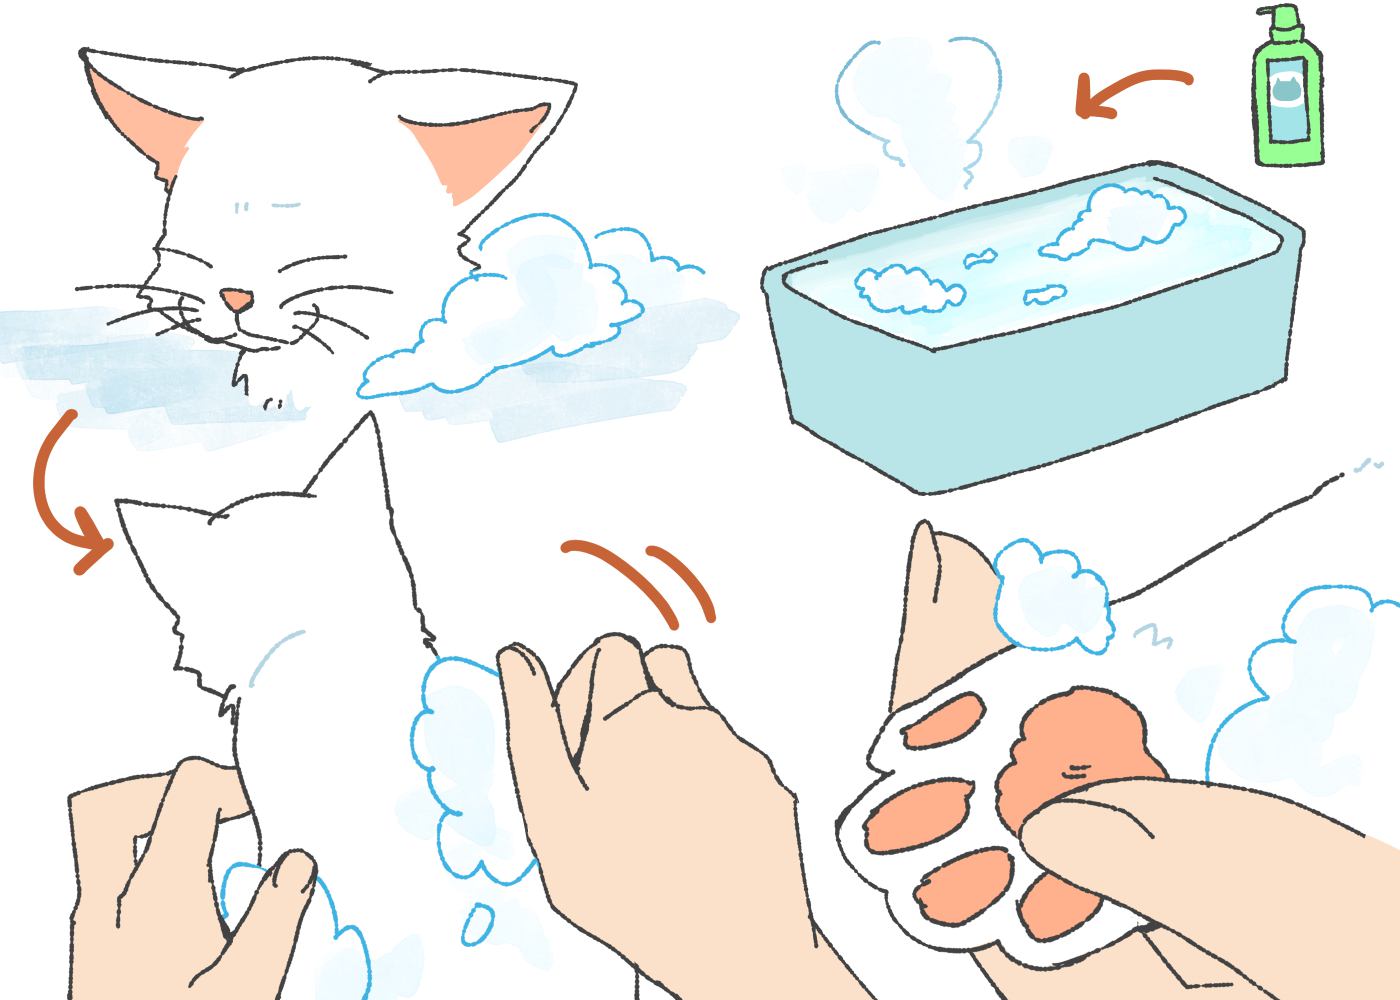 子猫にシャンプーをする時の注意点３つ！いつから洗っても大丈夫？